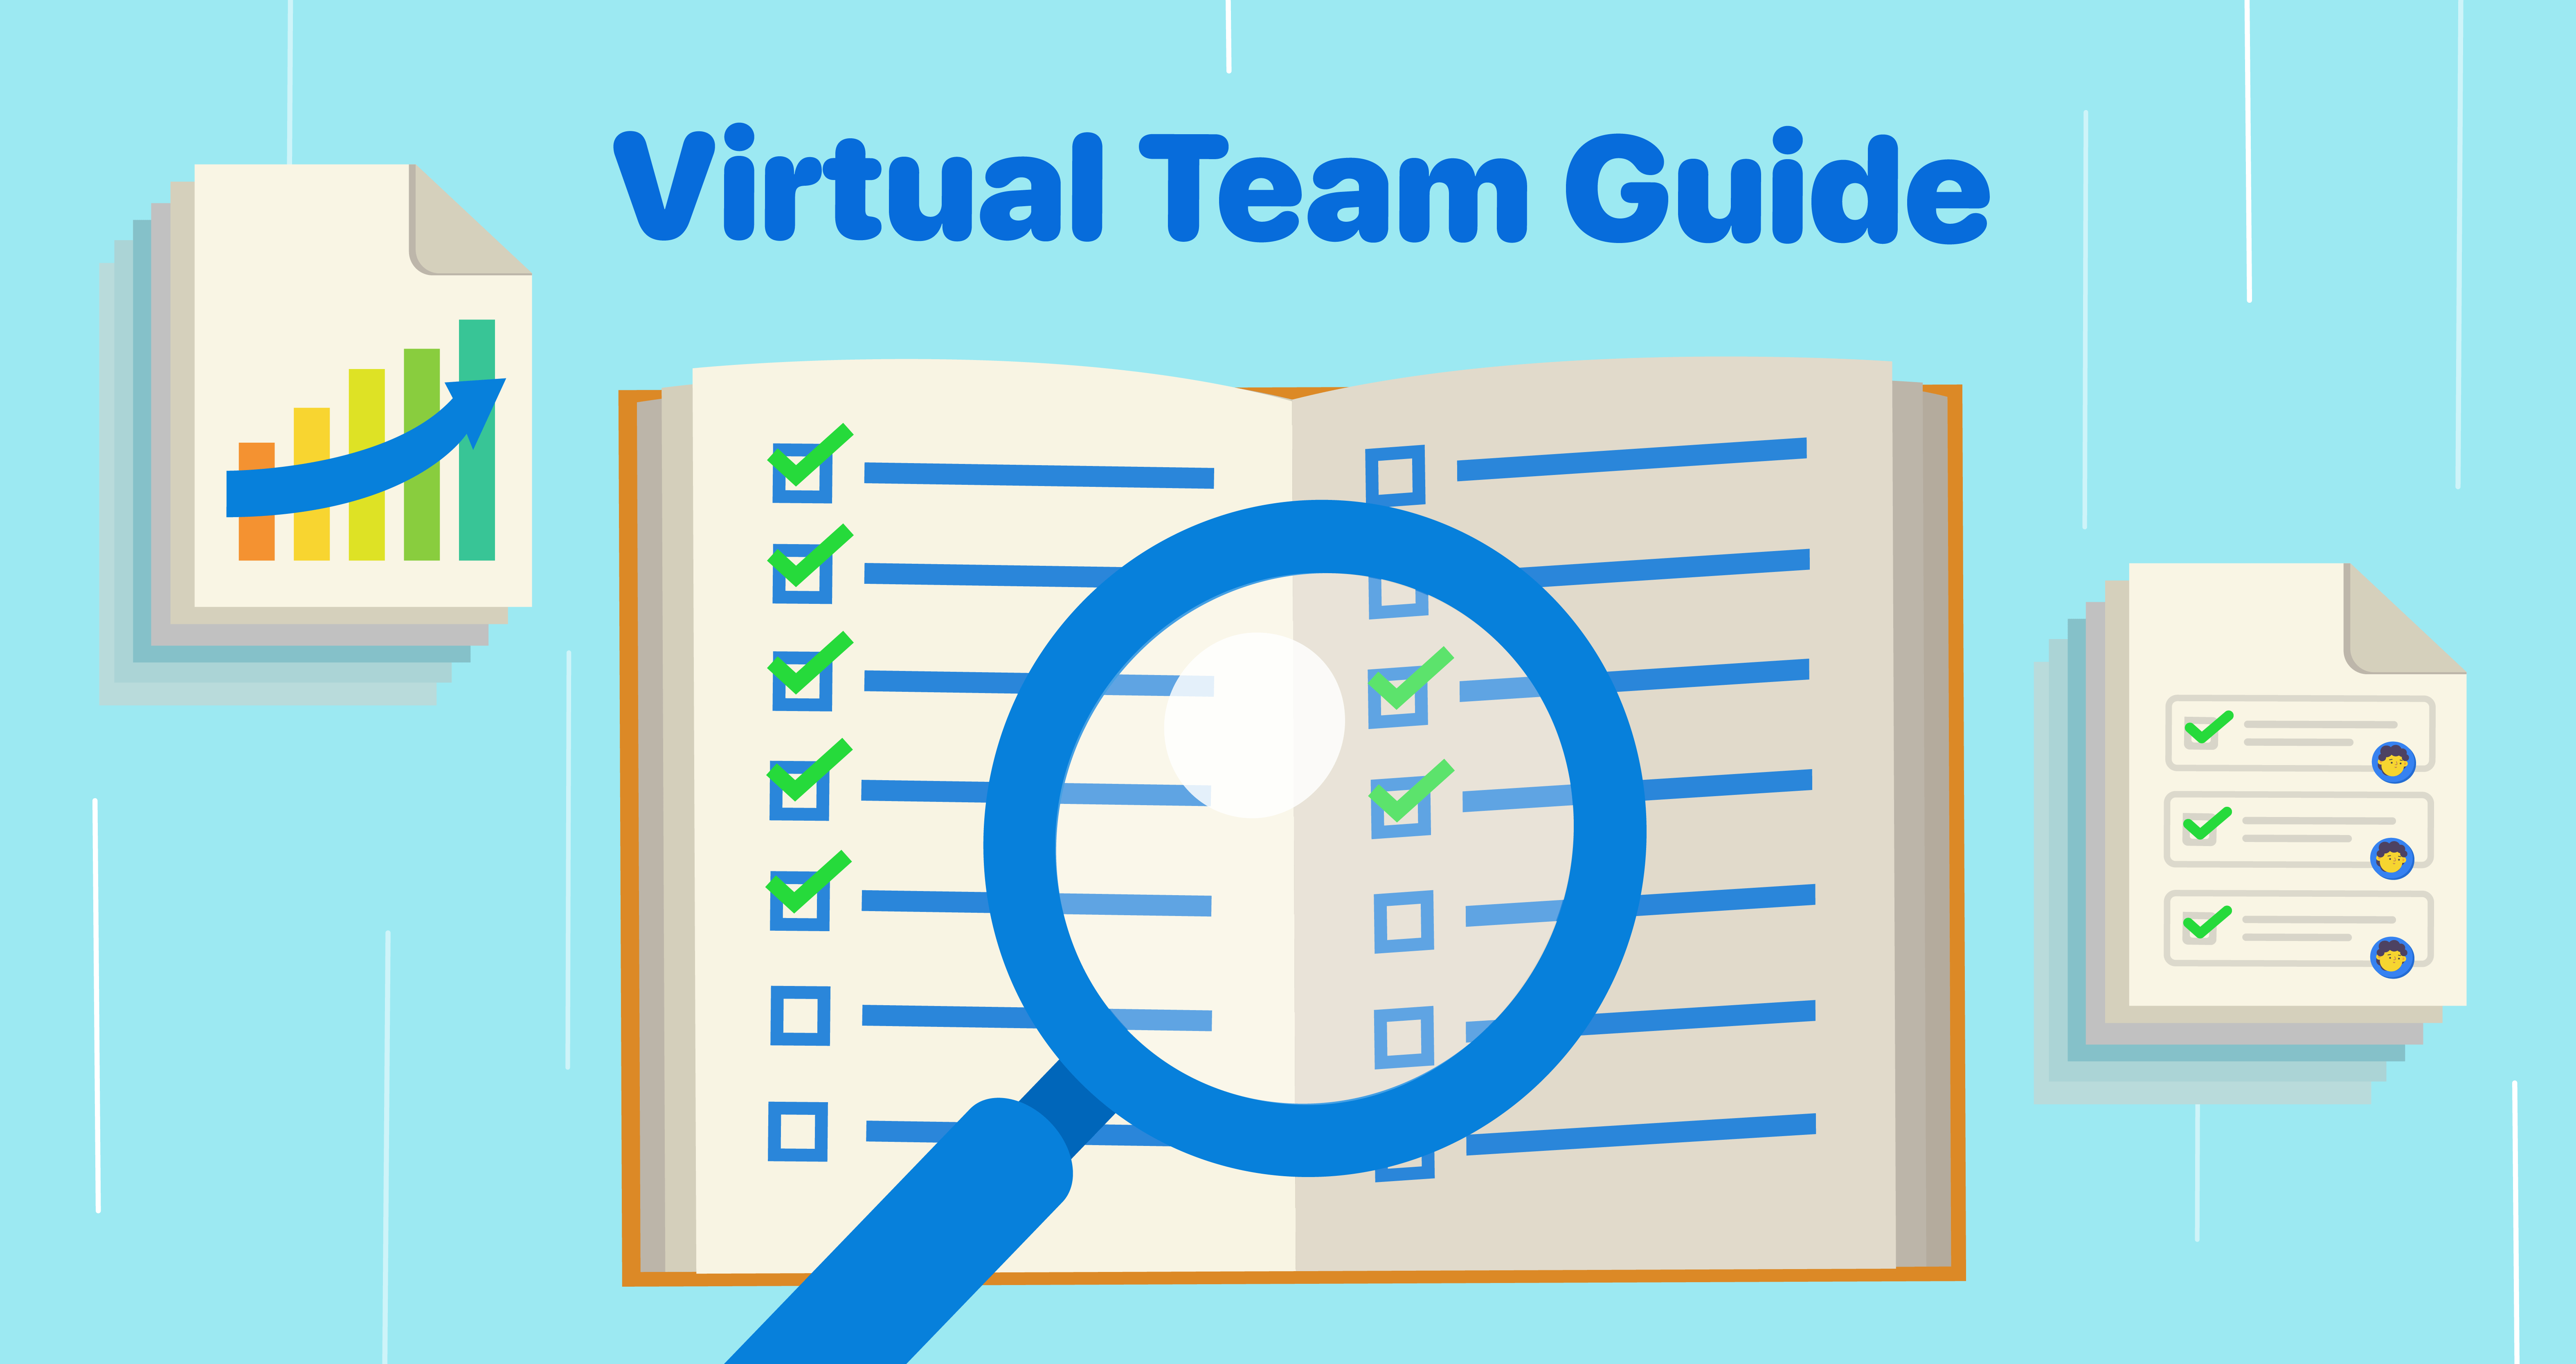 Virtual teams